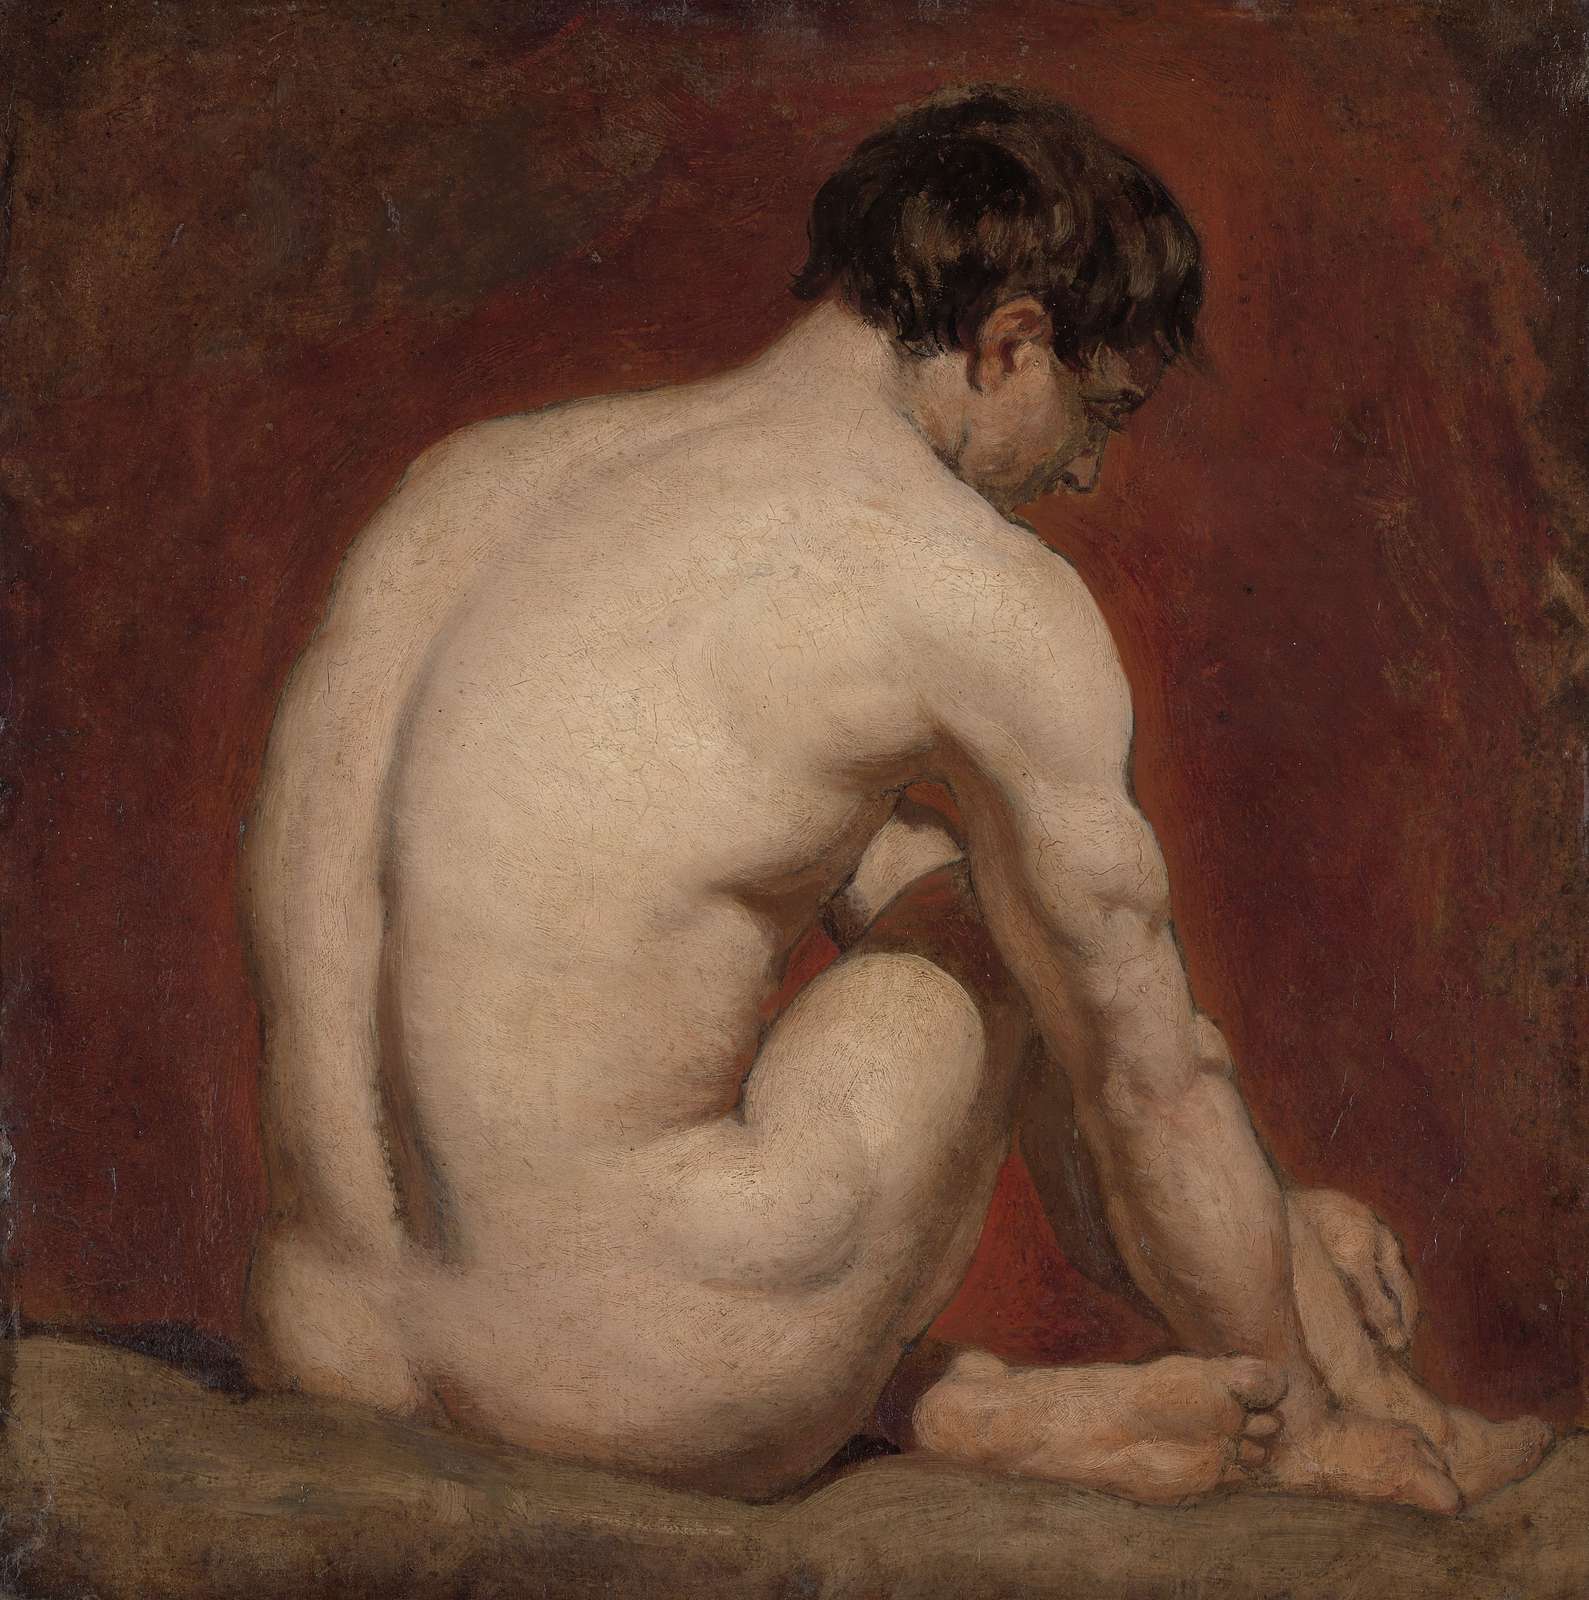 WILLIAM ETTY, R.A., Sleeping female nude